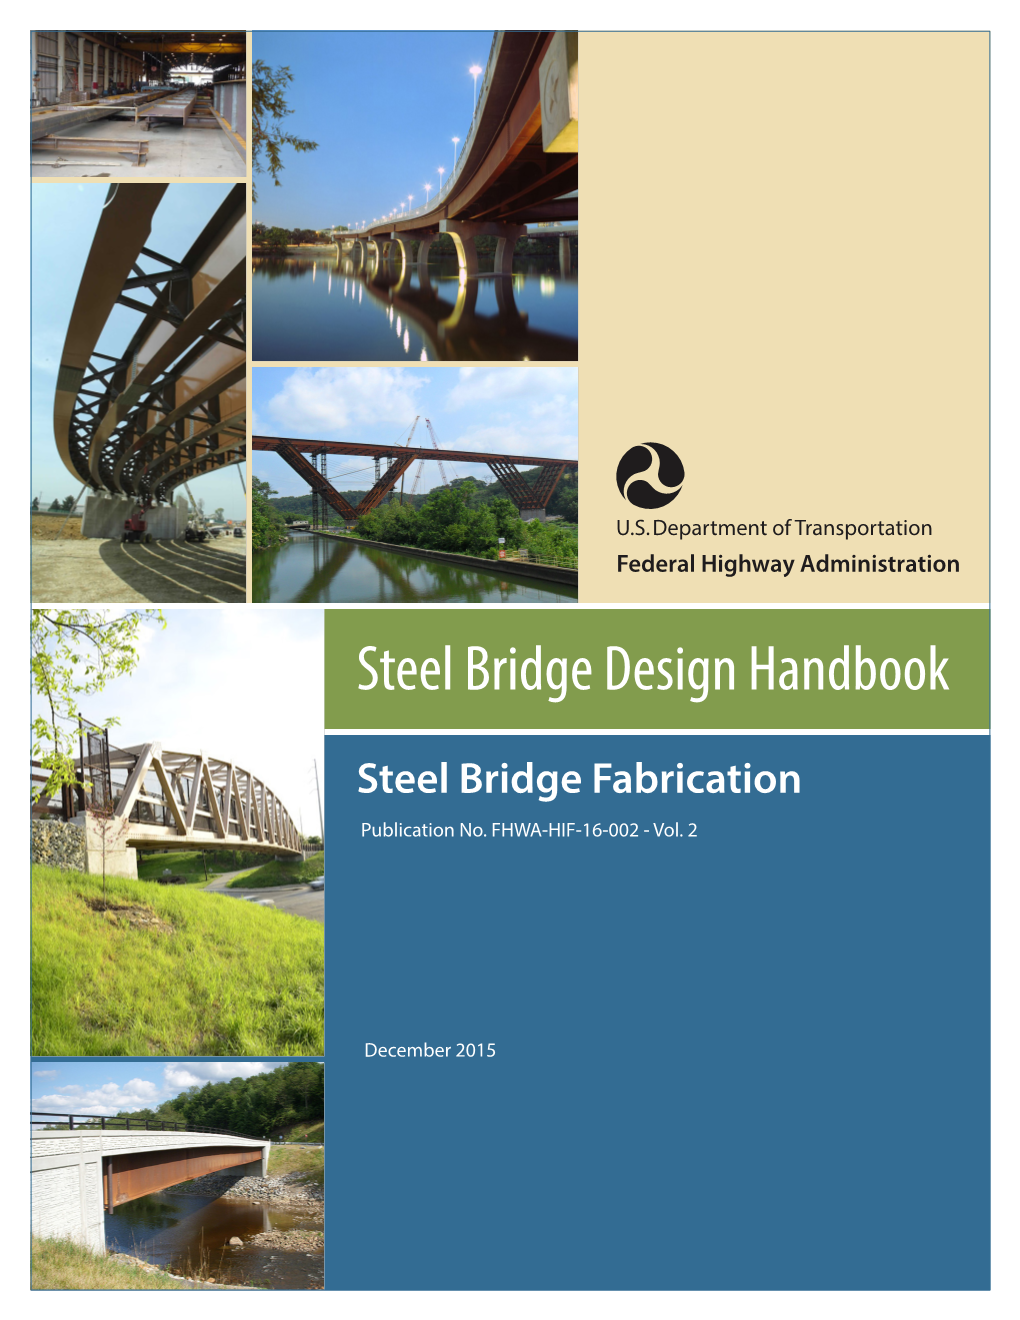 Steel Bridge Design Handbook Vol. 2